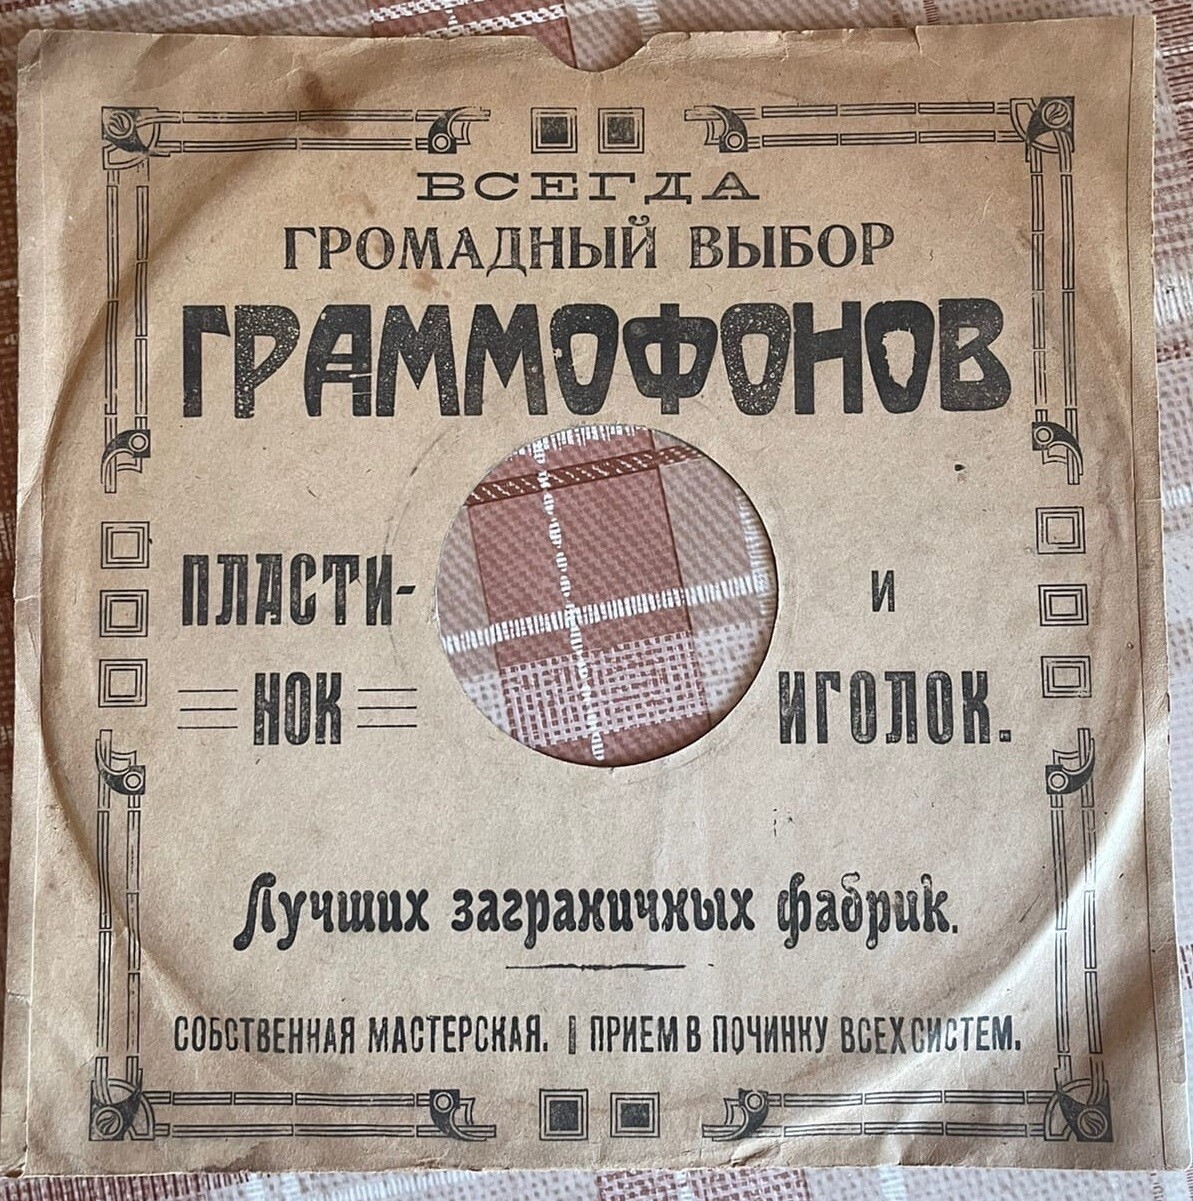 Всегда громадный выбор... (конверт начала 1920-х годов). Кооператив "Граммофон", Москва. Вариант